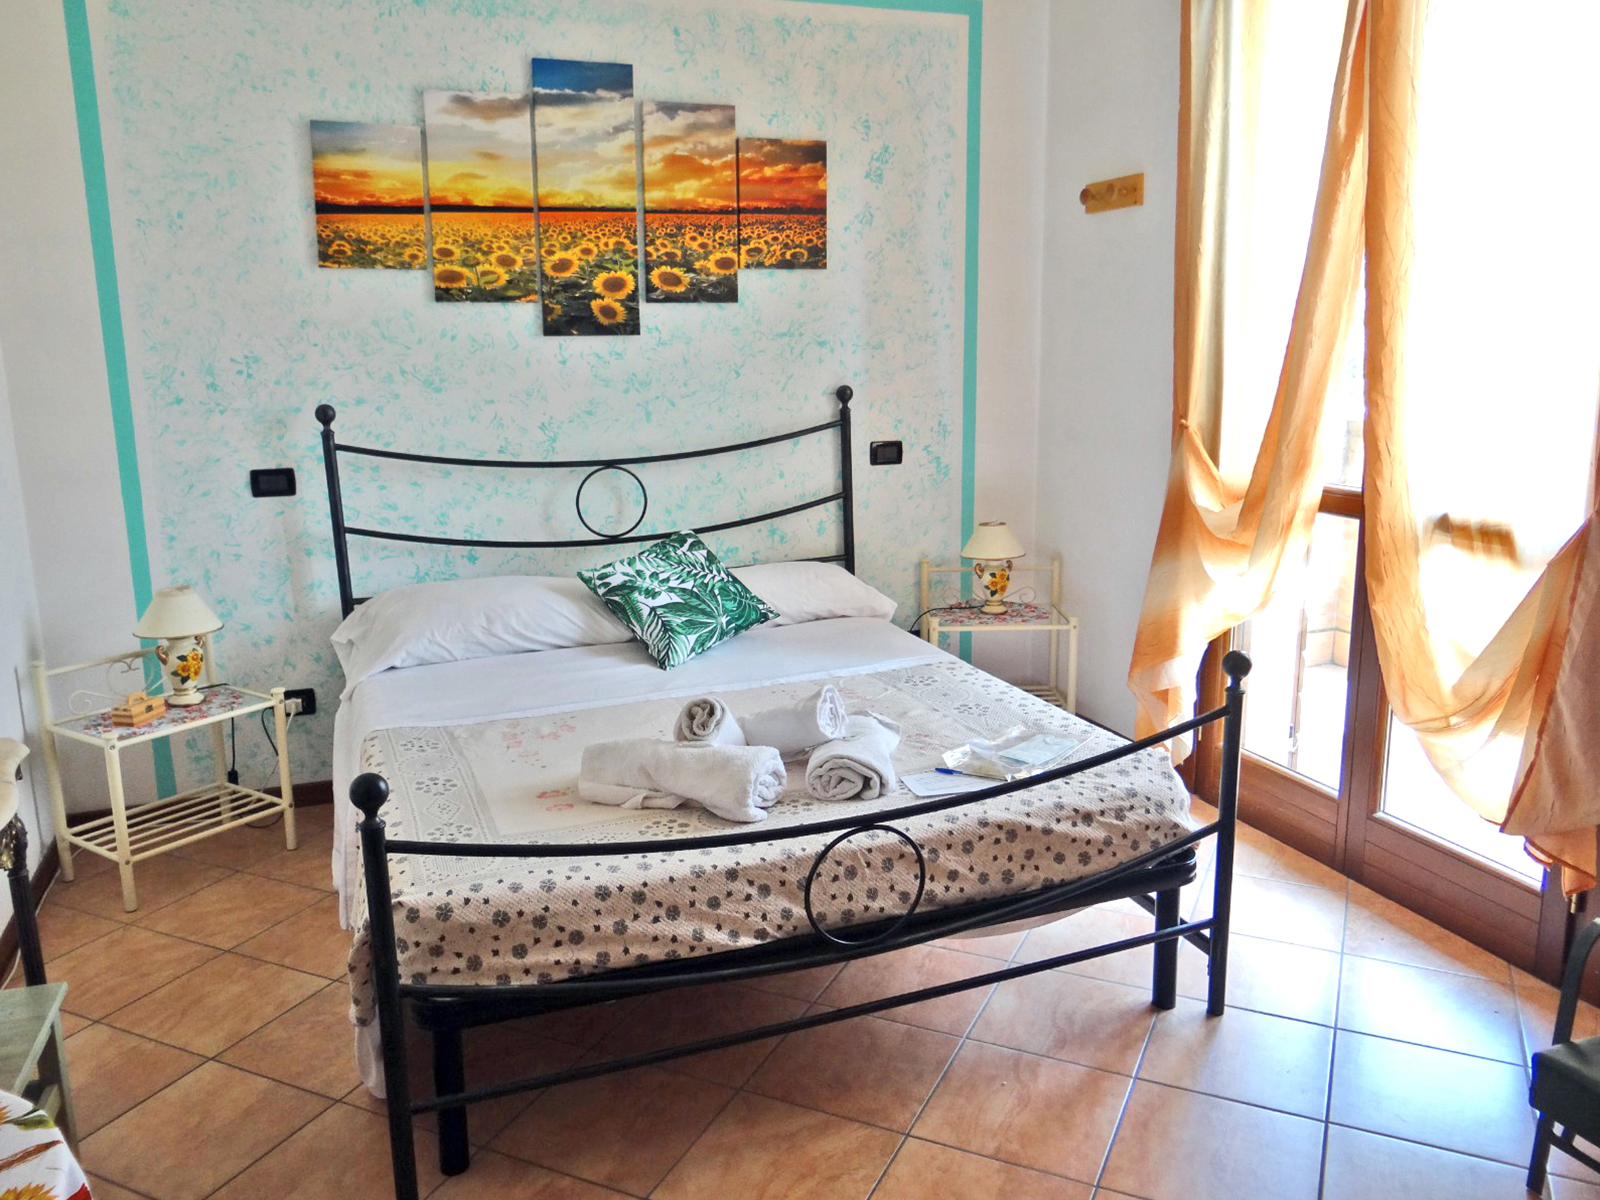 Dormire a Mantova | miglior B&B Mantova | Vacanze a Mantova | Hotel | Bed and Breakfast Mantova | Soggiorno Mantova | Camera a ore | Wi-Fi gratuito